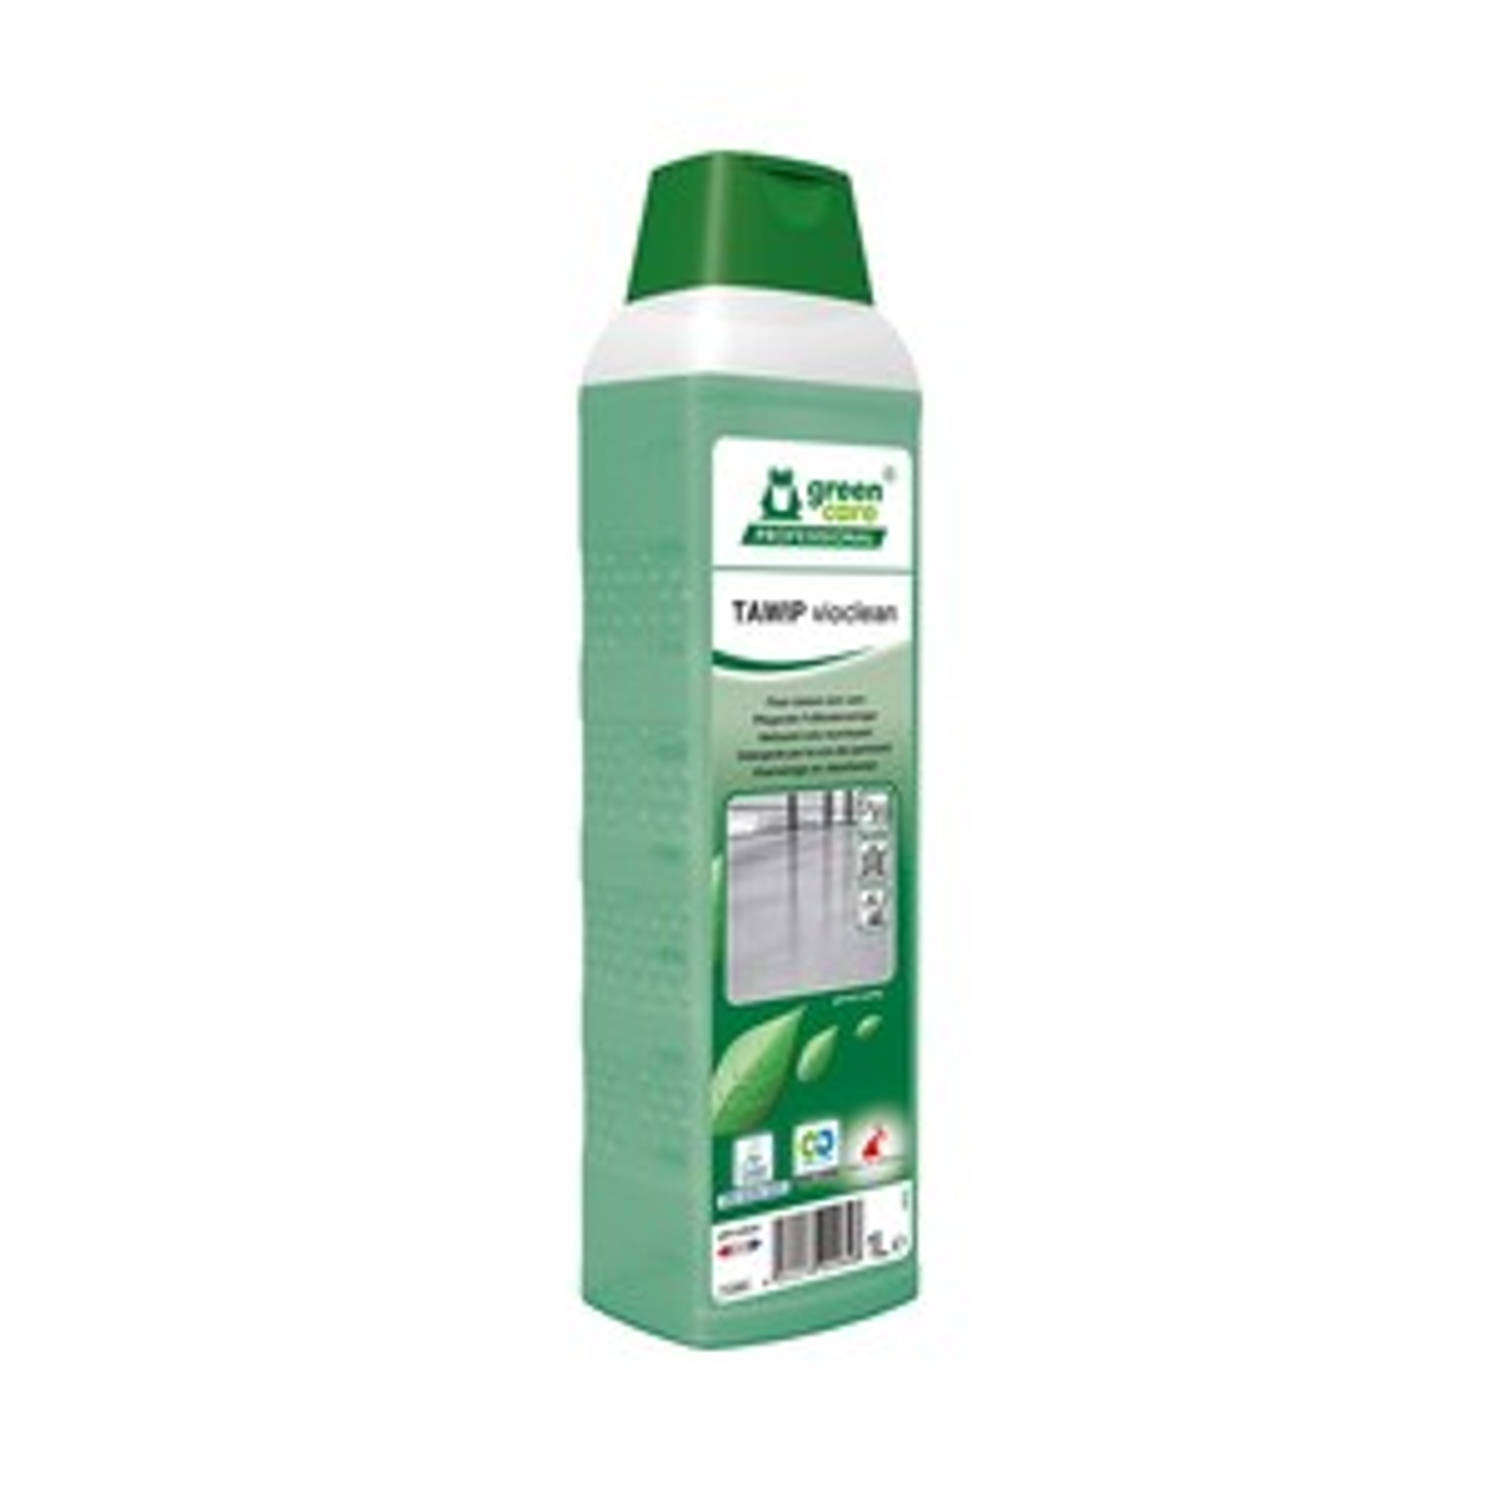 Green care tawip vioclean vloerreiniger (1 liter)